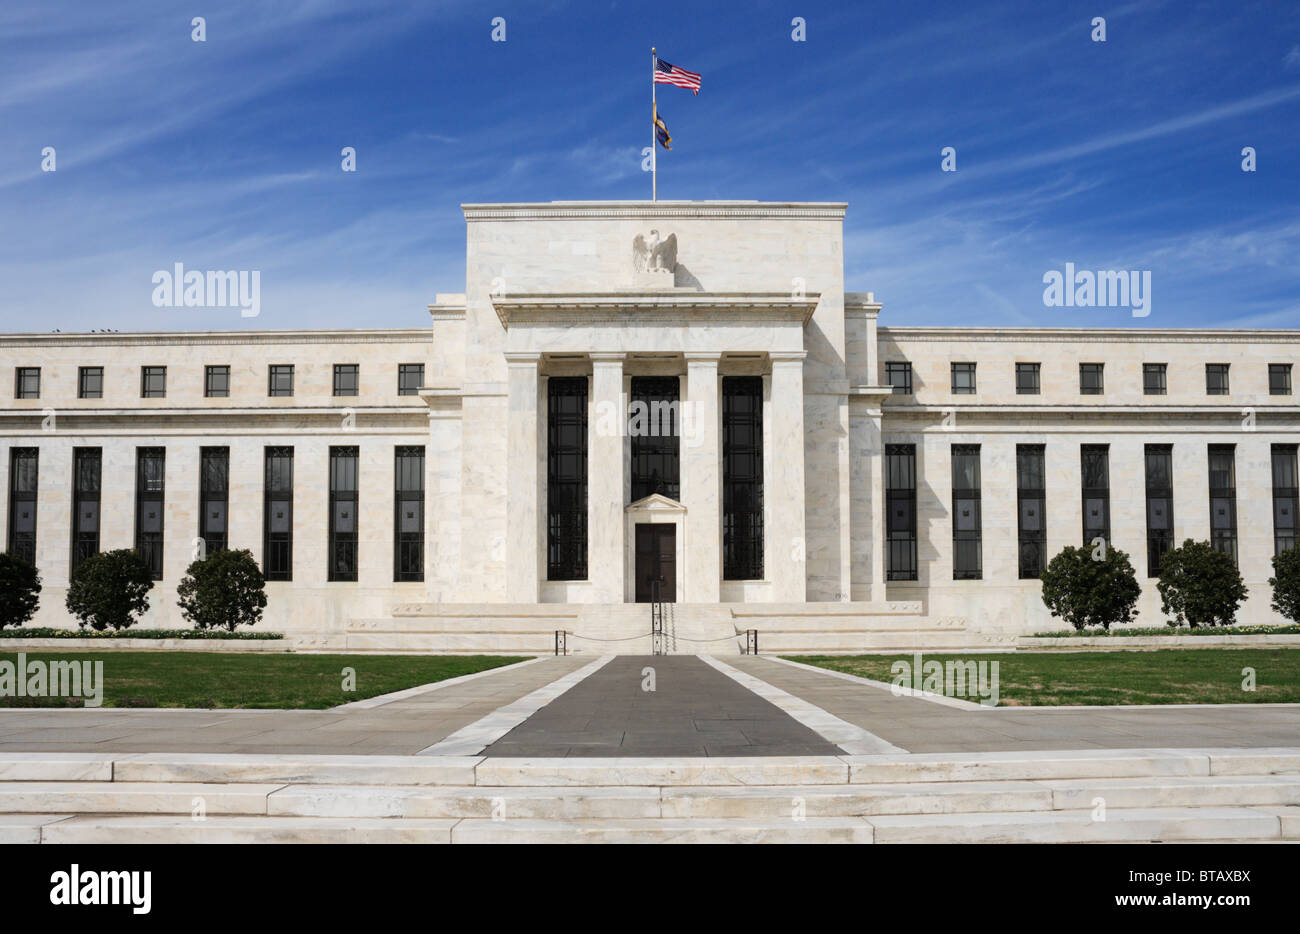 Le quartier général de la Réserve fédérale des Etats-Unis, Washington, DC. Banque D'Images